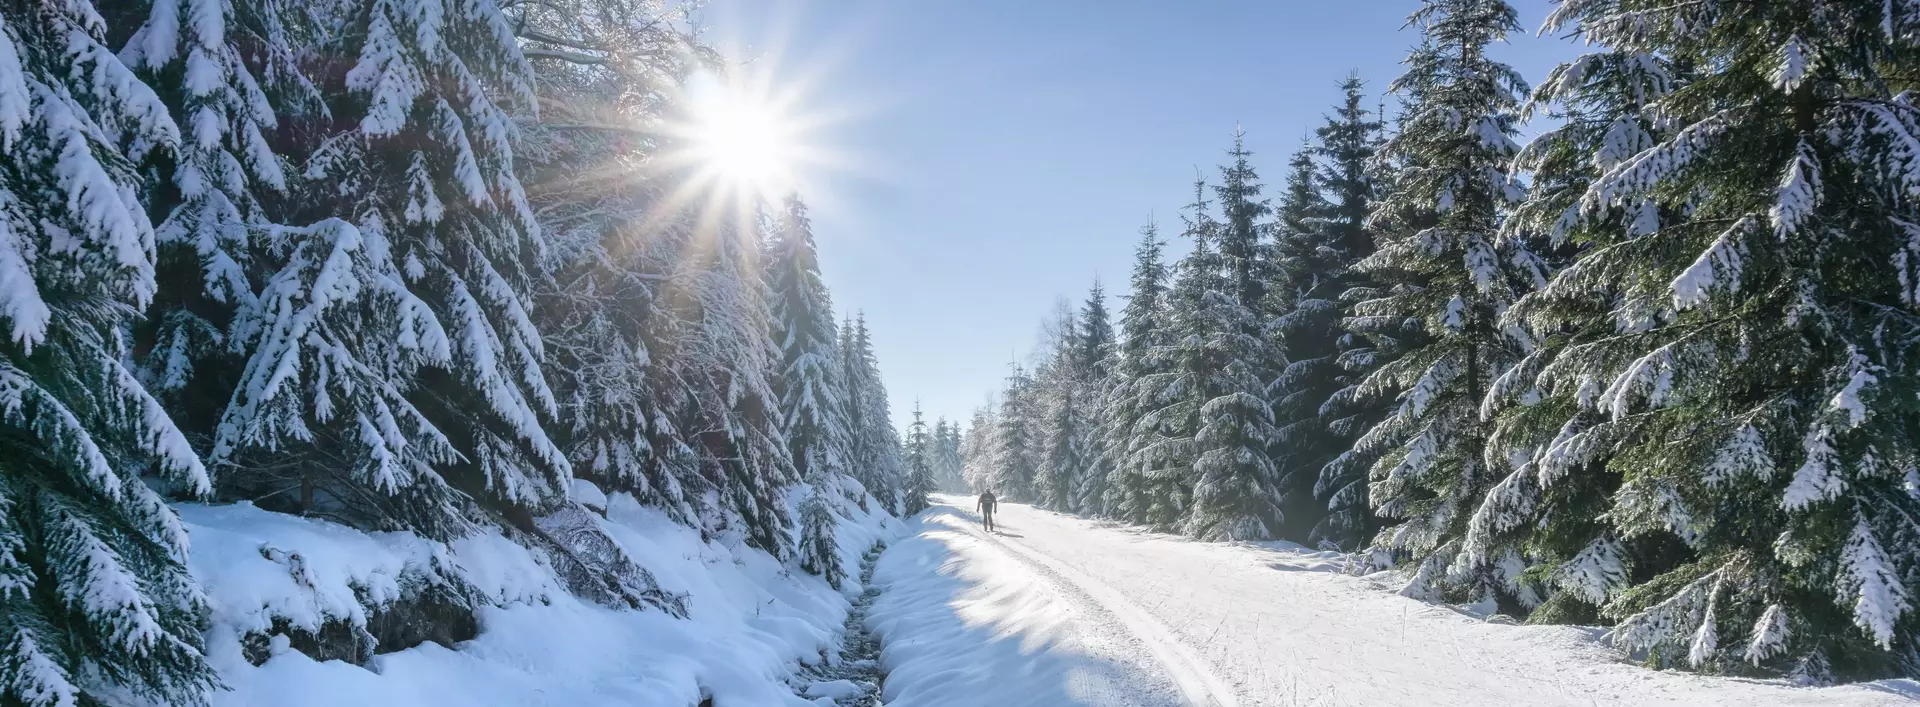 Weg in verschneiten Wald an einem sonnigen Tag im Winter